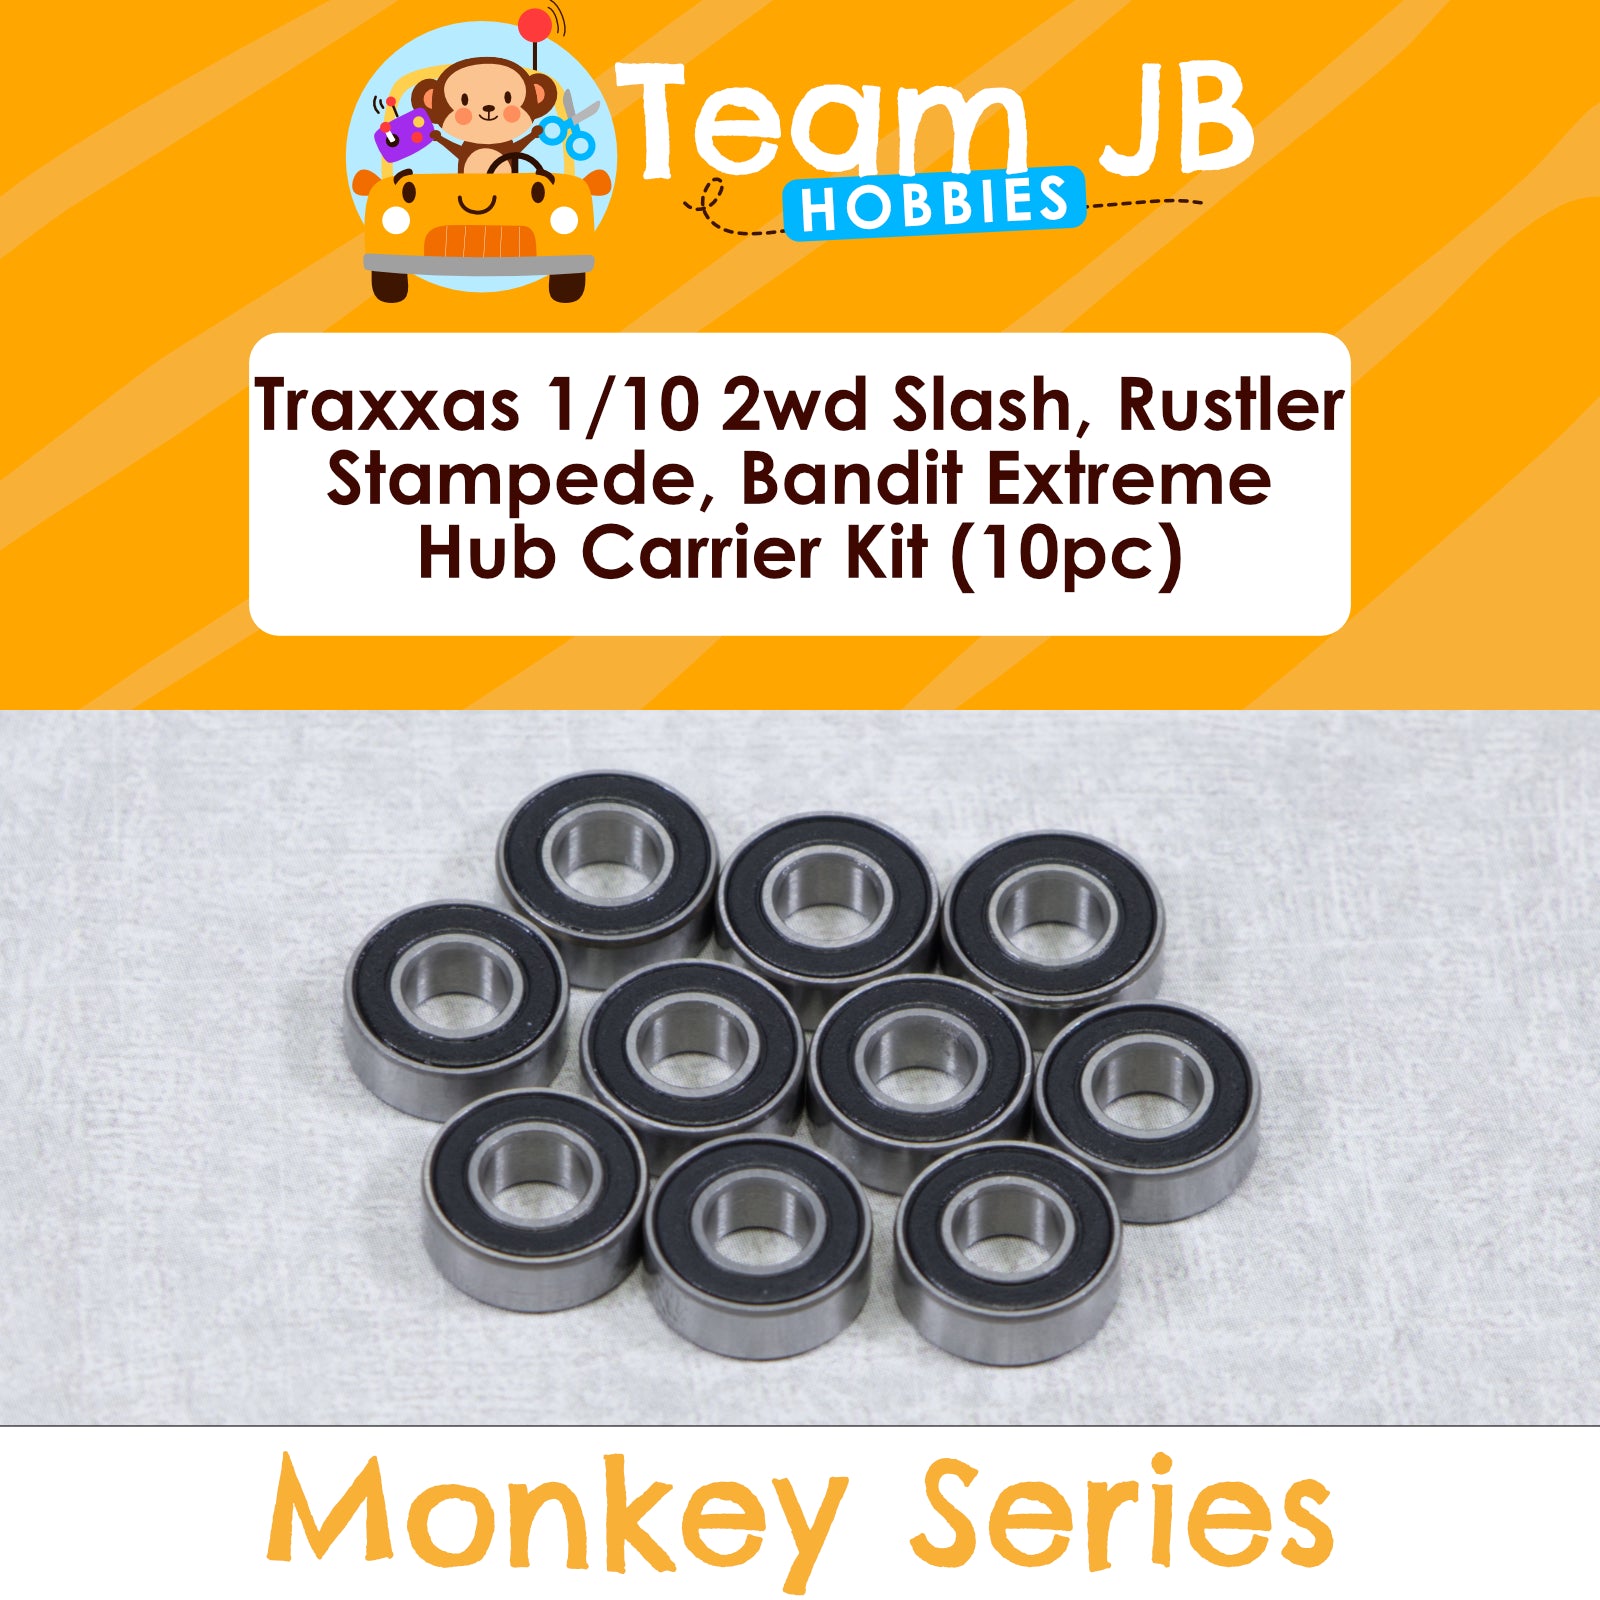 Traxxas 1/10 2wd Slash, Stampede, Rustler, Bandit Extreme - Sealed Hub Carrier Bearing Kit